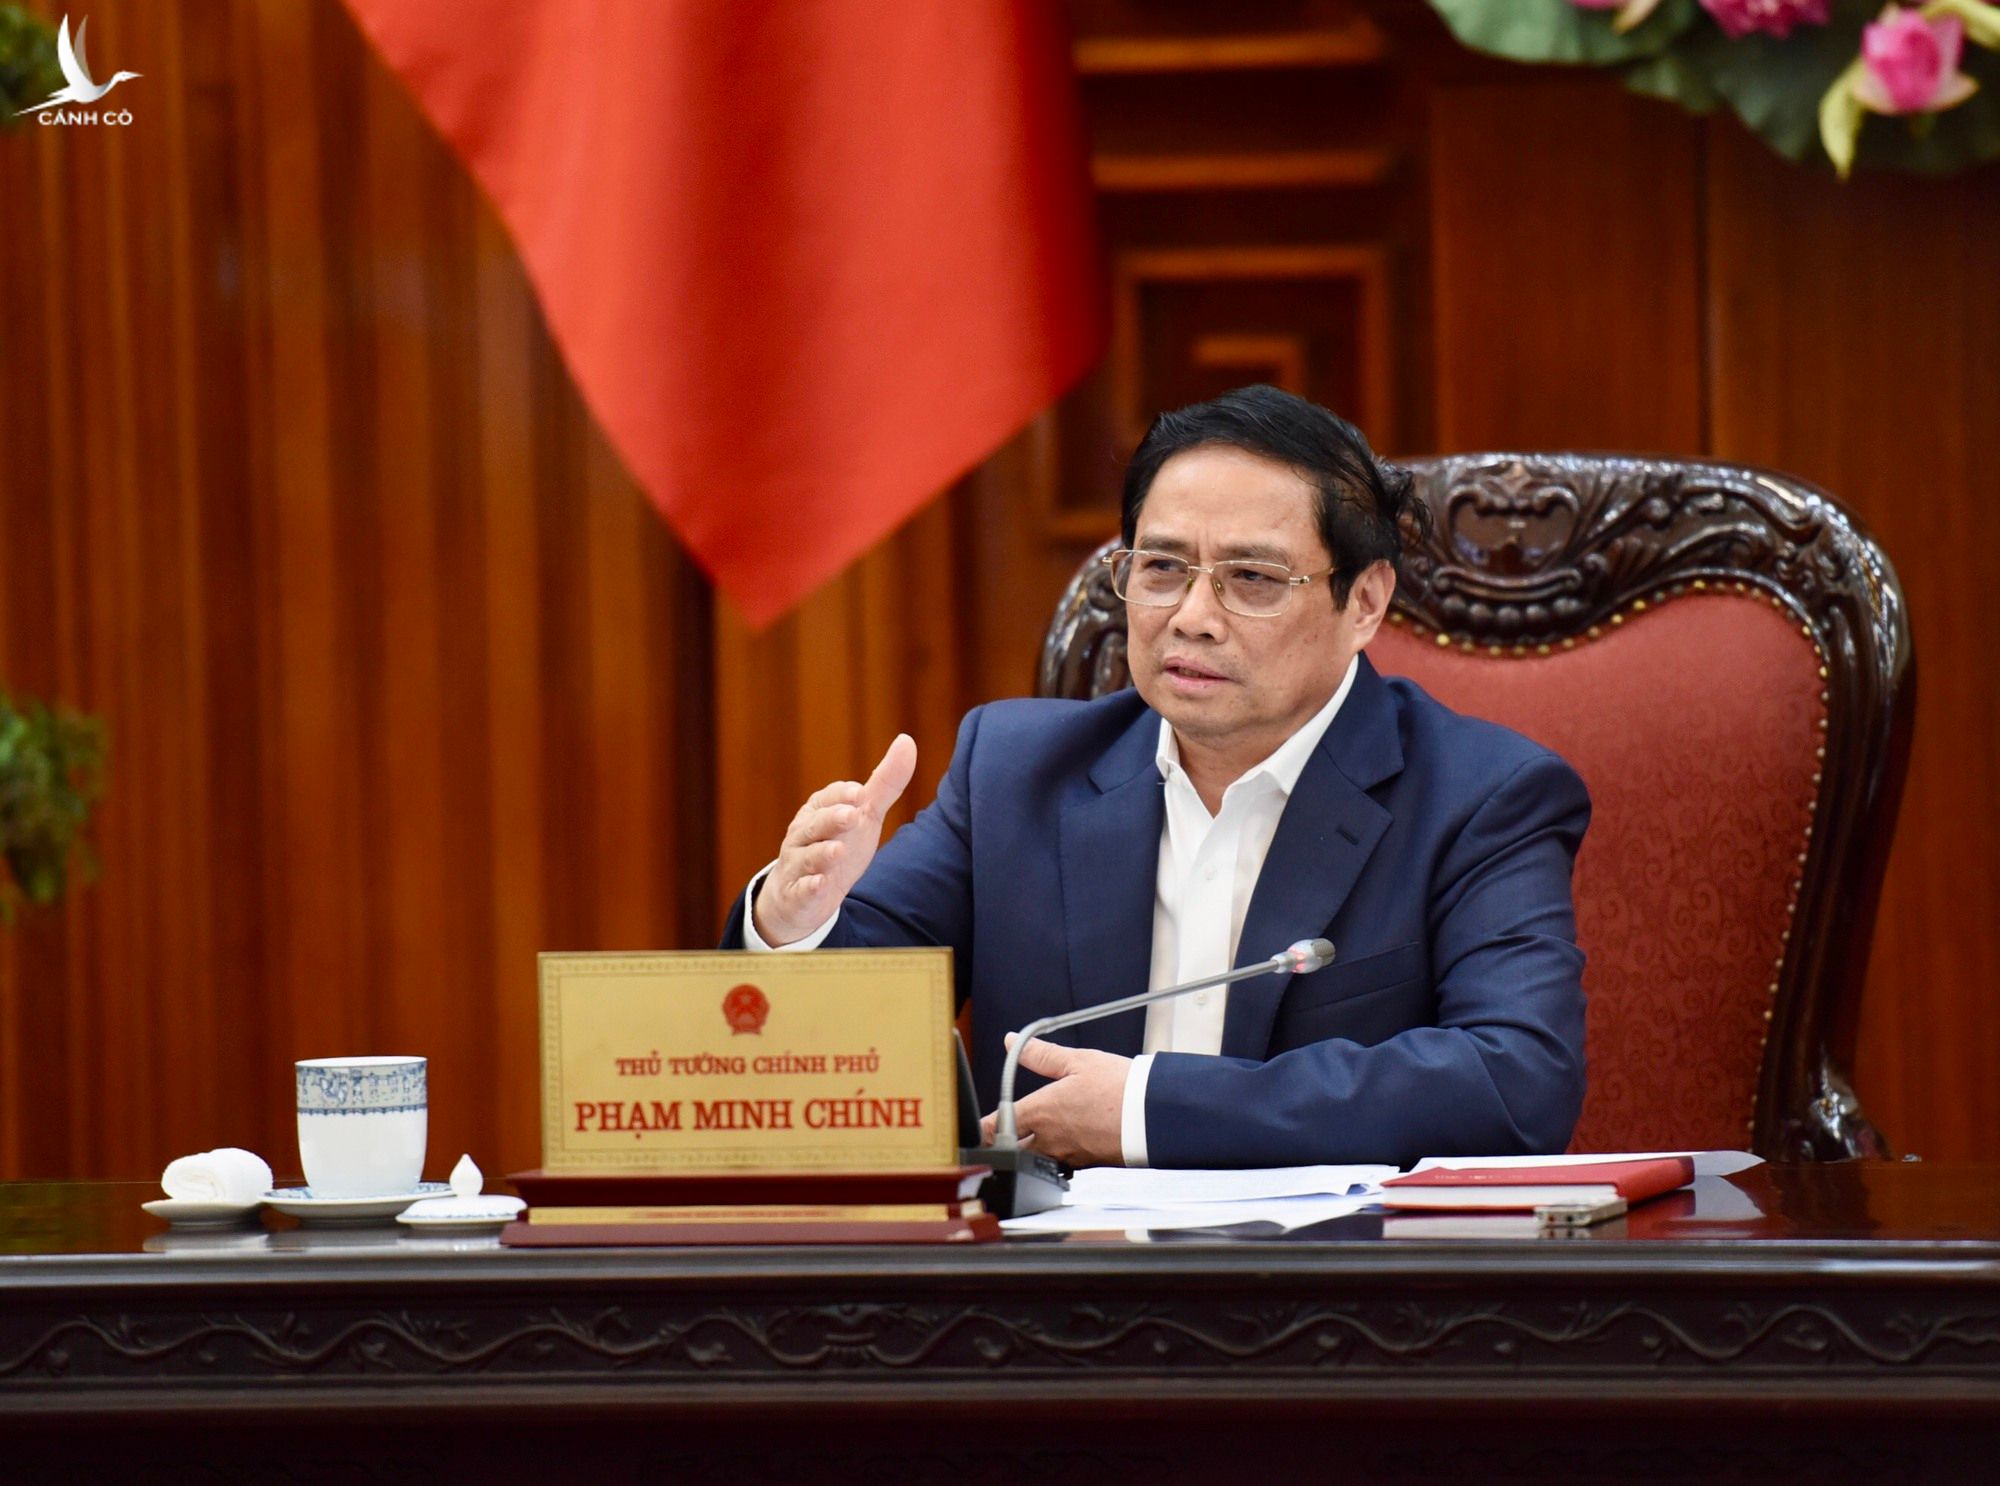 Thủ tướng Phạm Minh Chính chỉ đạo tiếp tục thực hiện quyết liệt các giải pháp tăng cường khả năng tiếp cận vốn tín dụng, thúc đẩy phát triển thị trường trái phiếu doanh nghiệp, bất động sản hiệu quả, an toàn, lành mạnh, bền vững. 